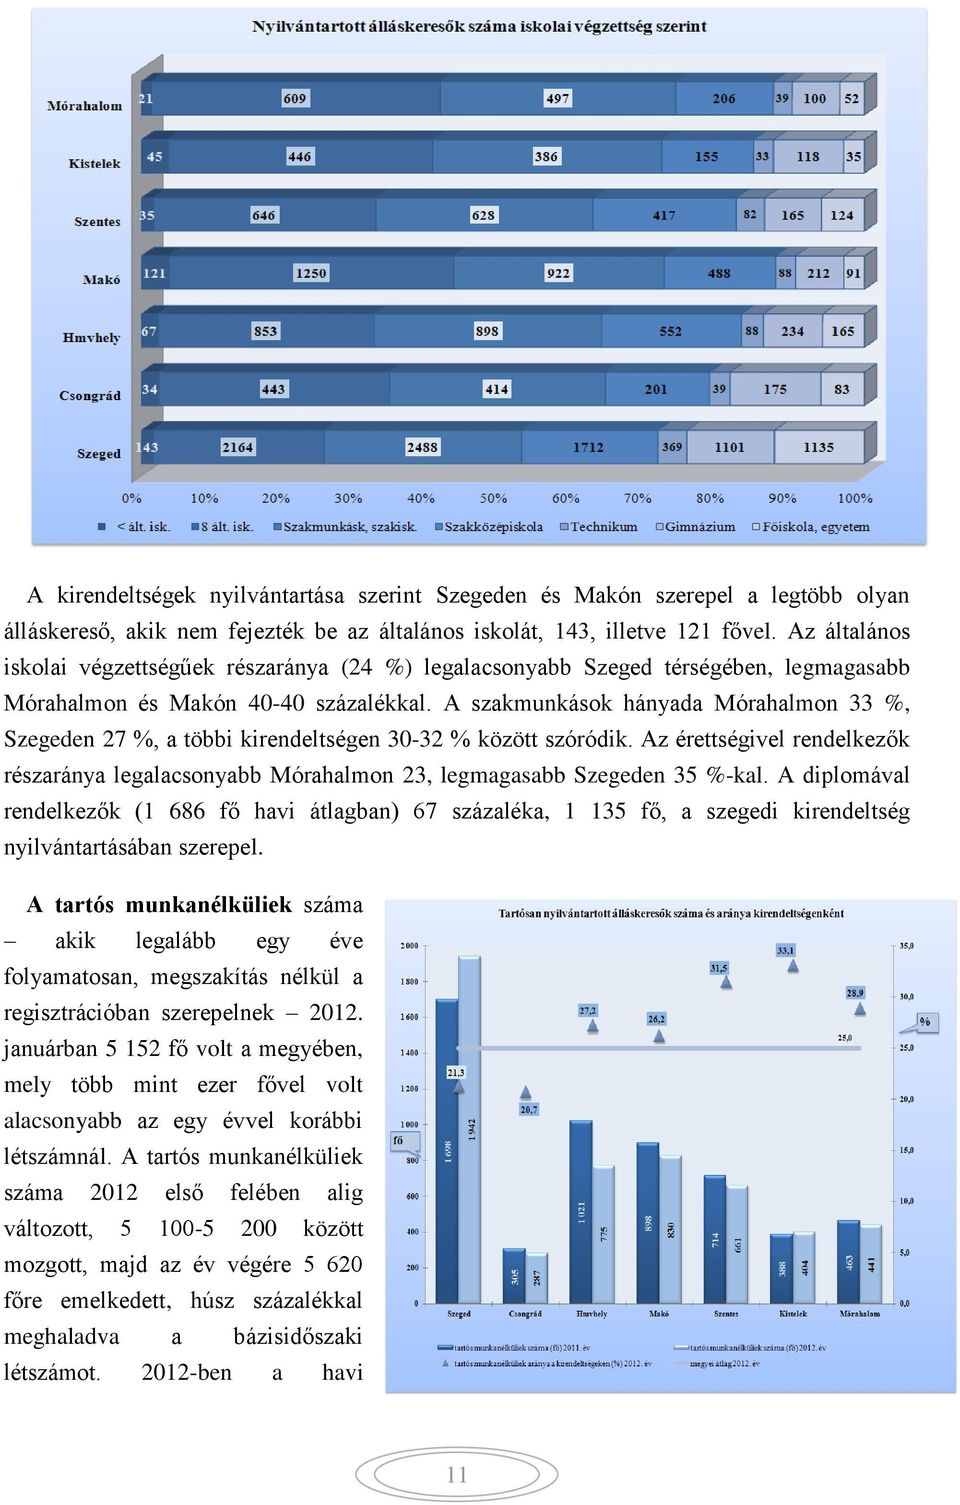 A szakmunkások hányada Mórahalmon 33 %, Szegeden 27 %, a többi kirendeltségen 30-32 % között szóródik.